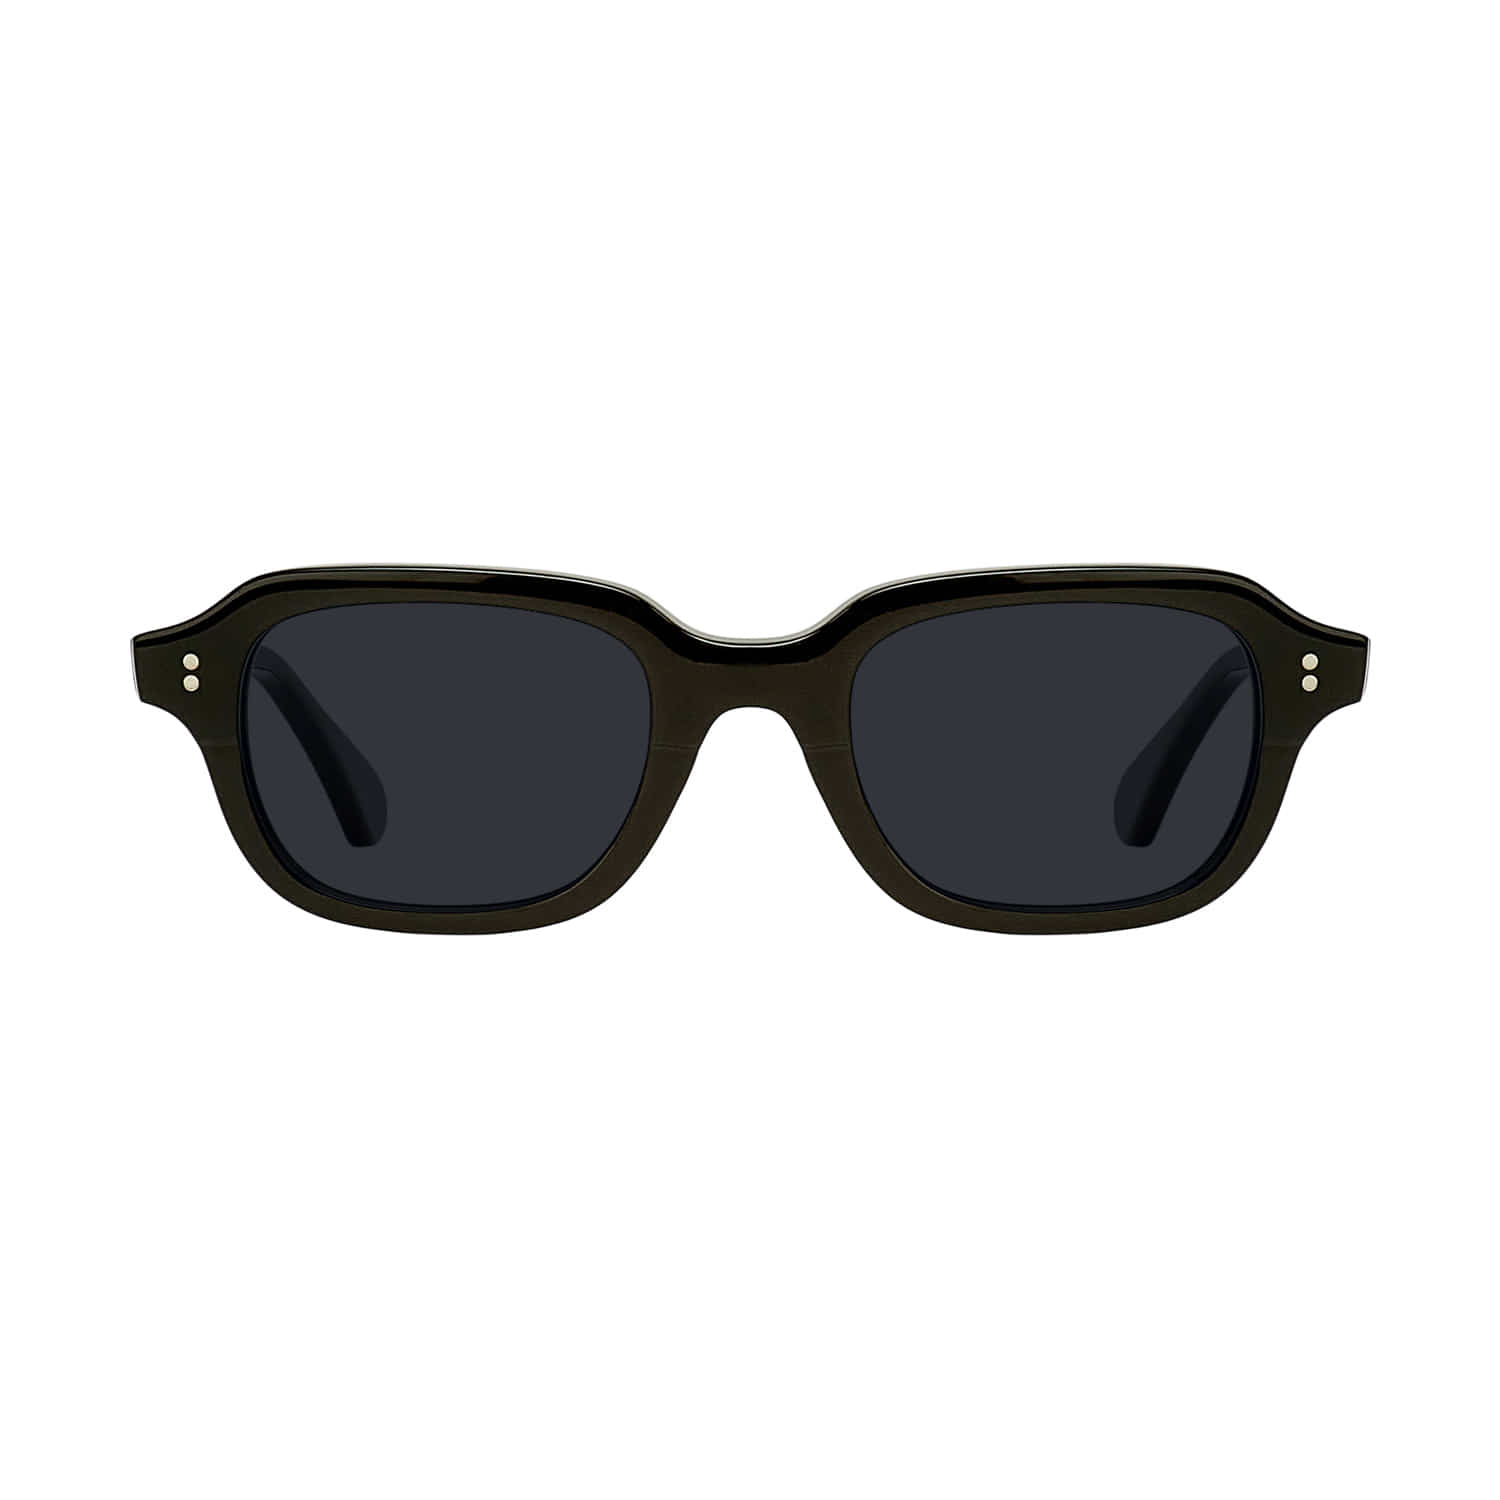 PILOT Sunglasses - Shiny Black